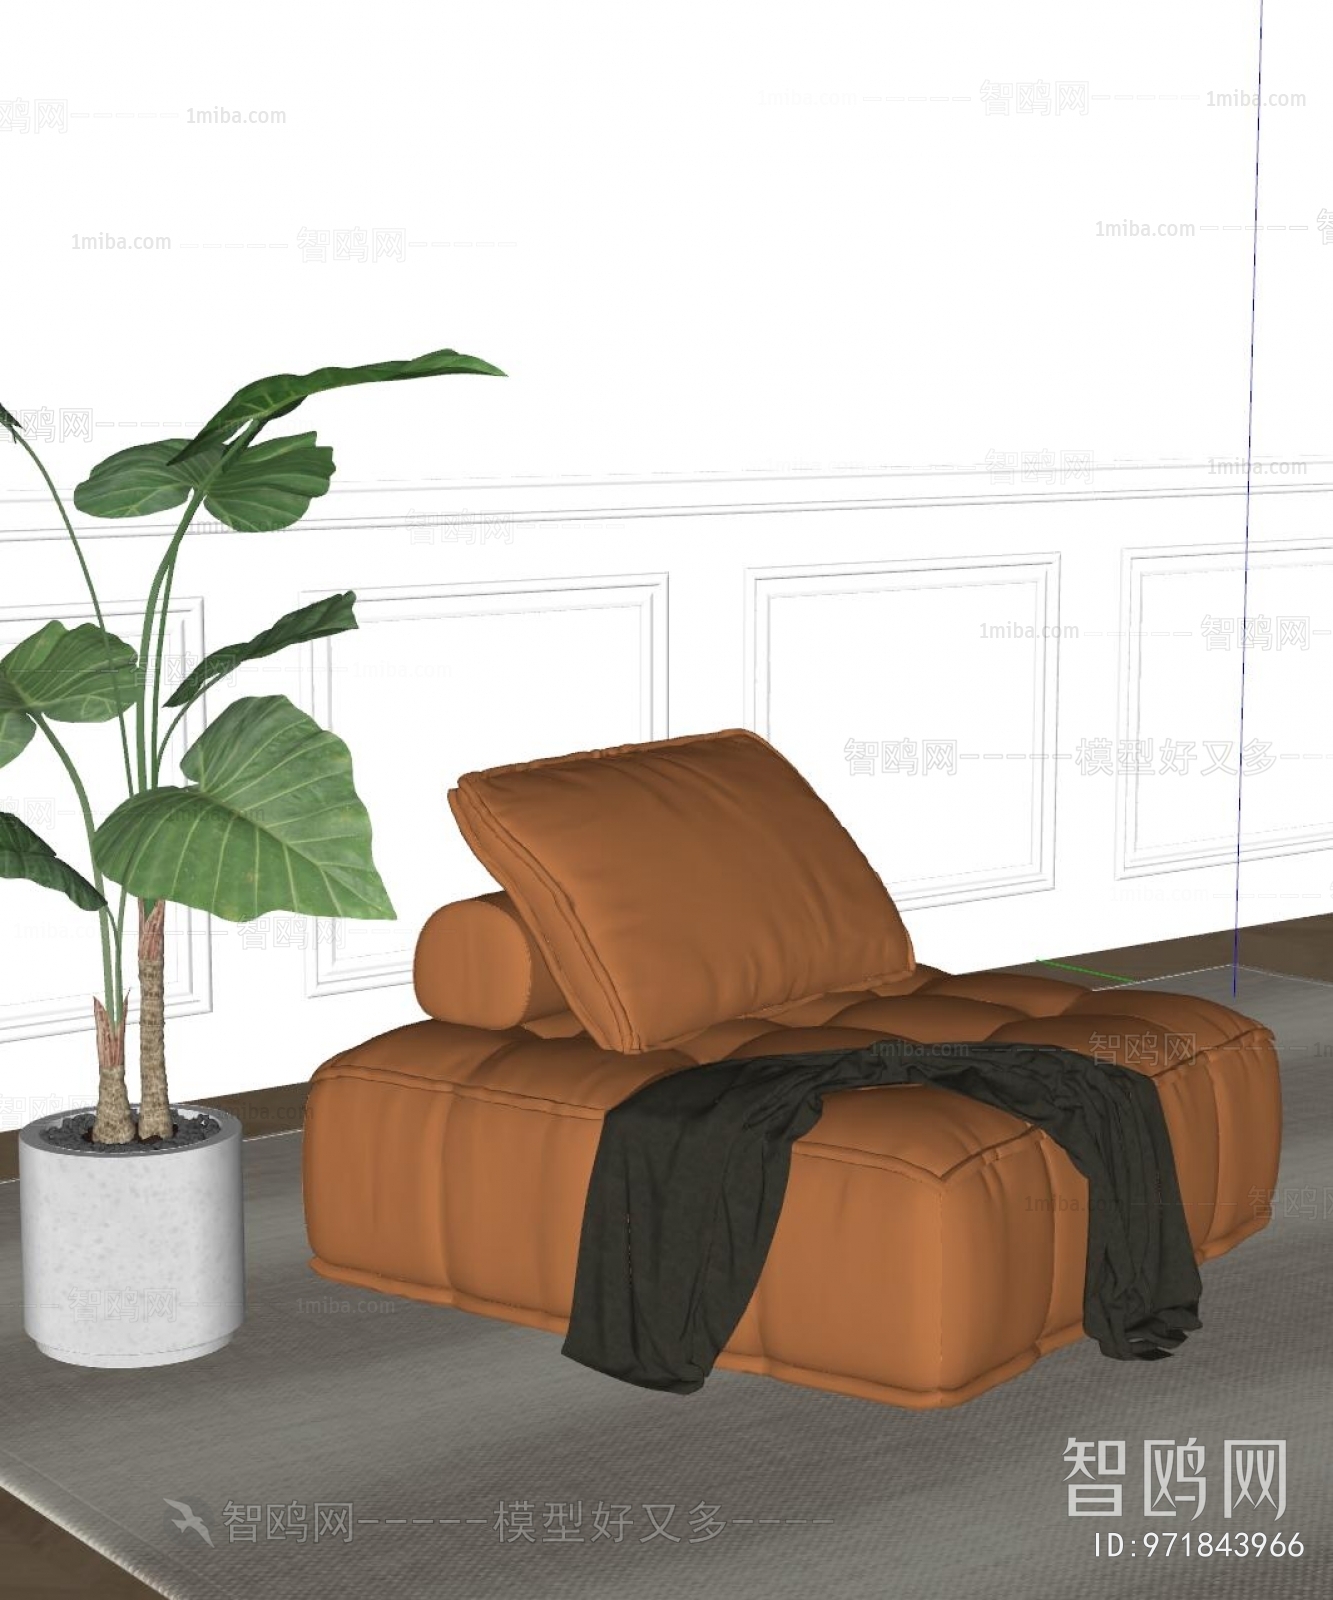 现代皮革单人沙发